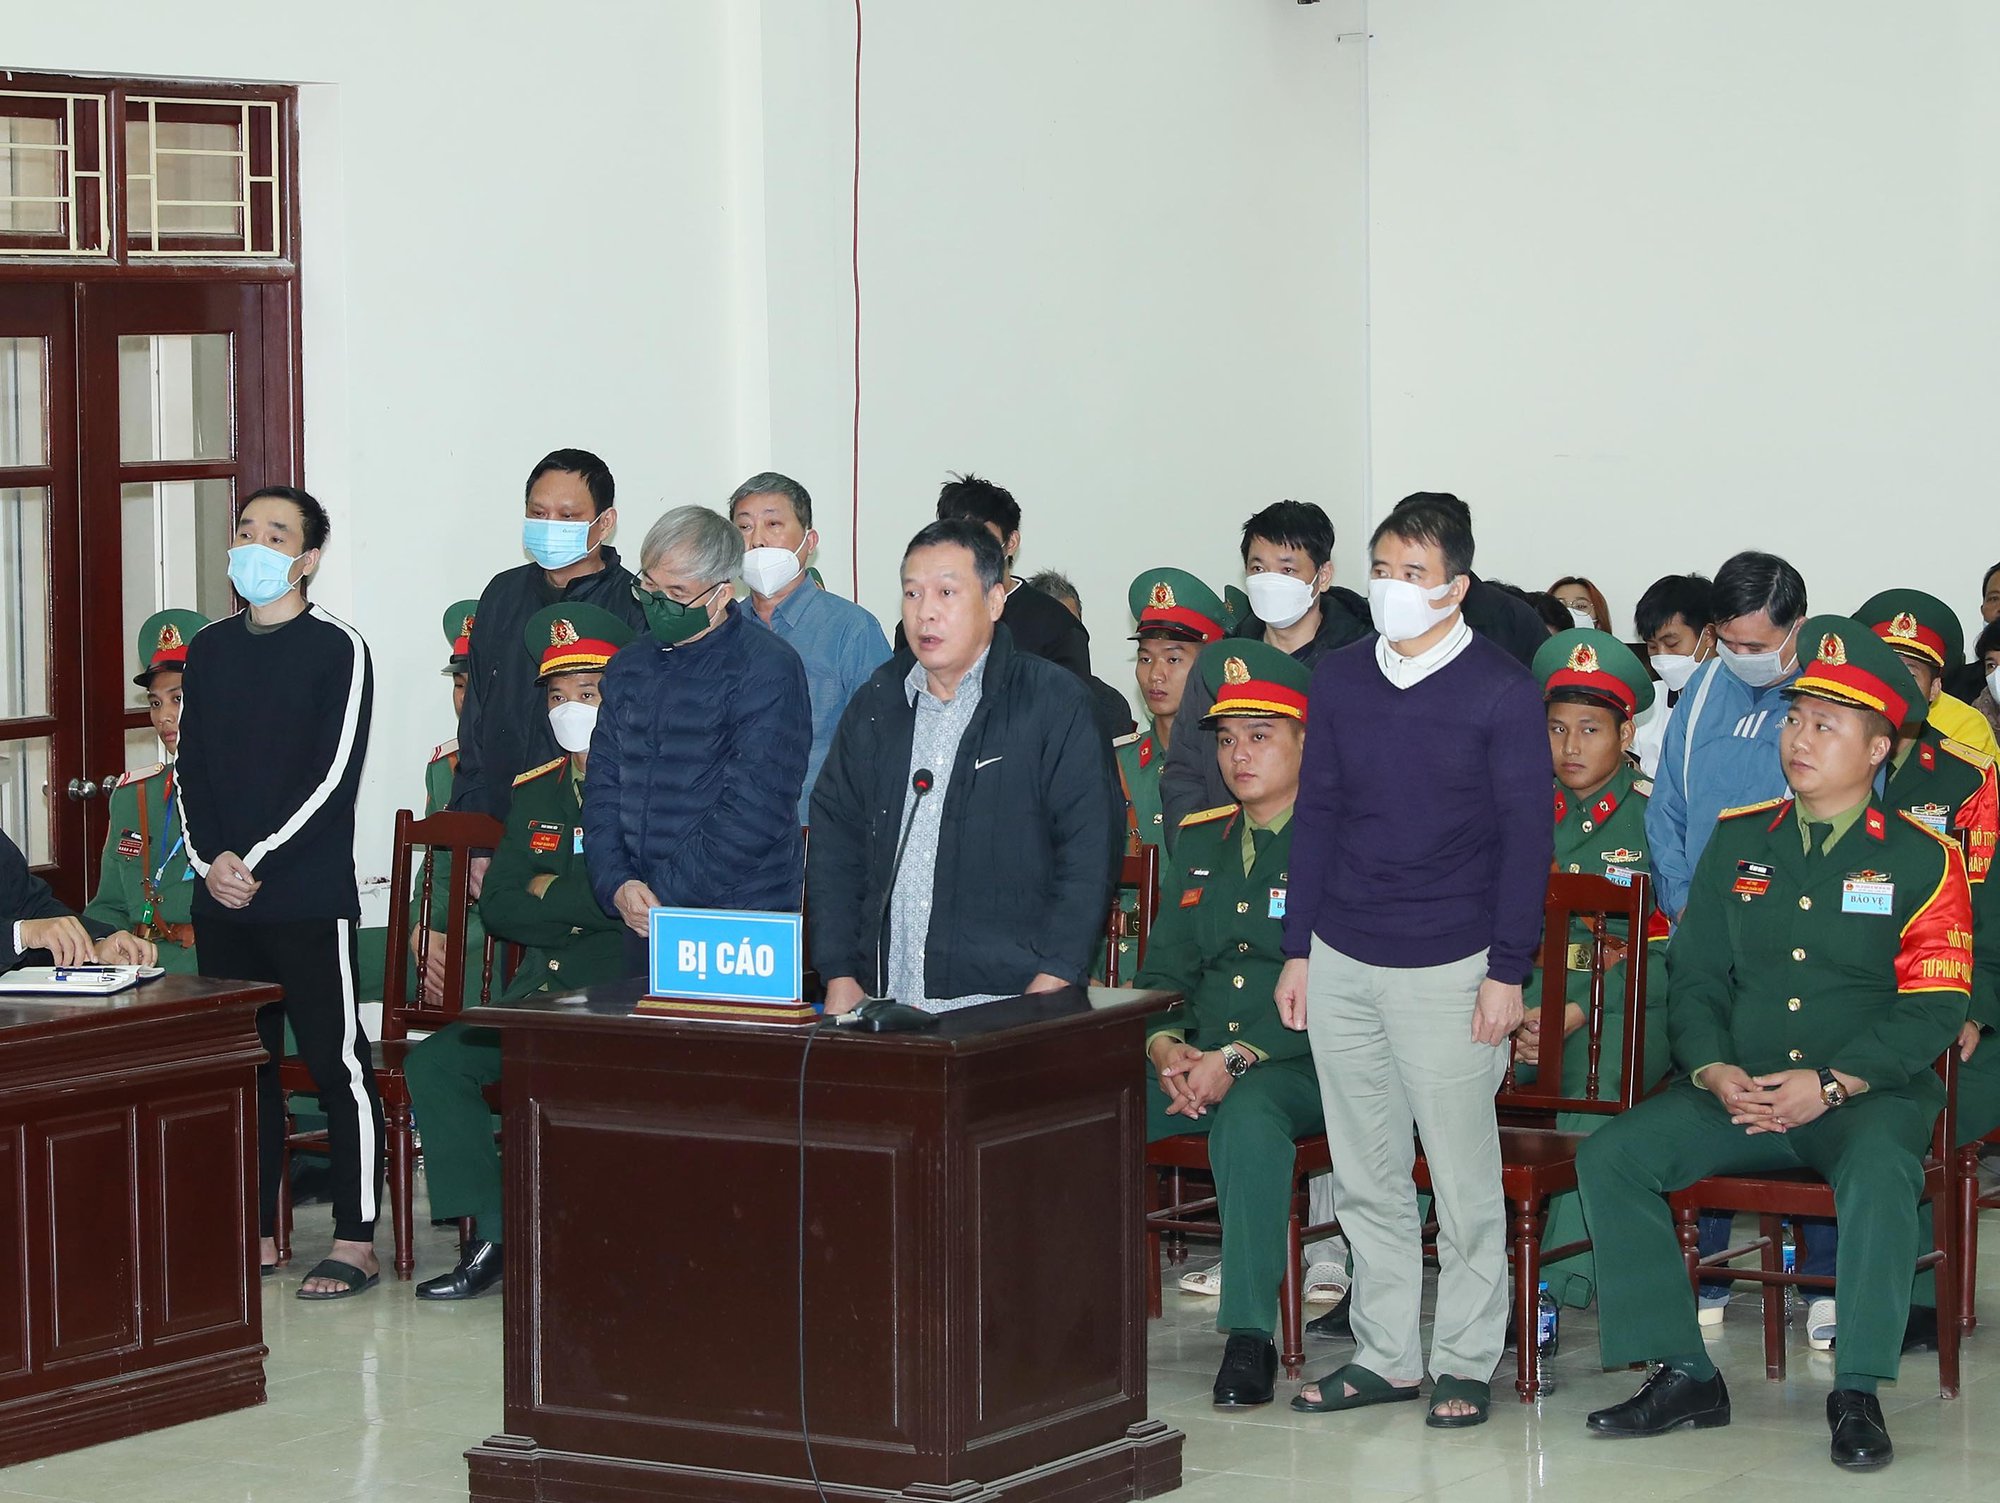 Vụ buôn lậu xăng dầu: Cựu đại tá Nguyễn Thế Anh không kêu oan tội nhận hối lộ nữa - Ảnh 2.